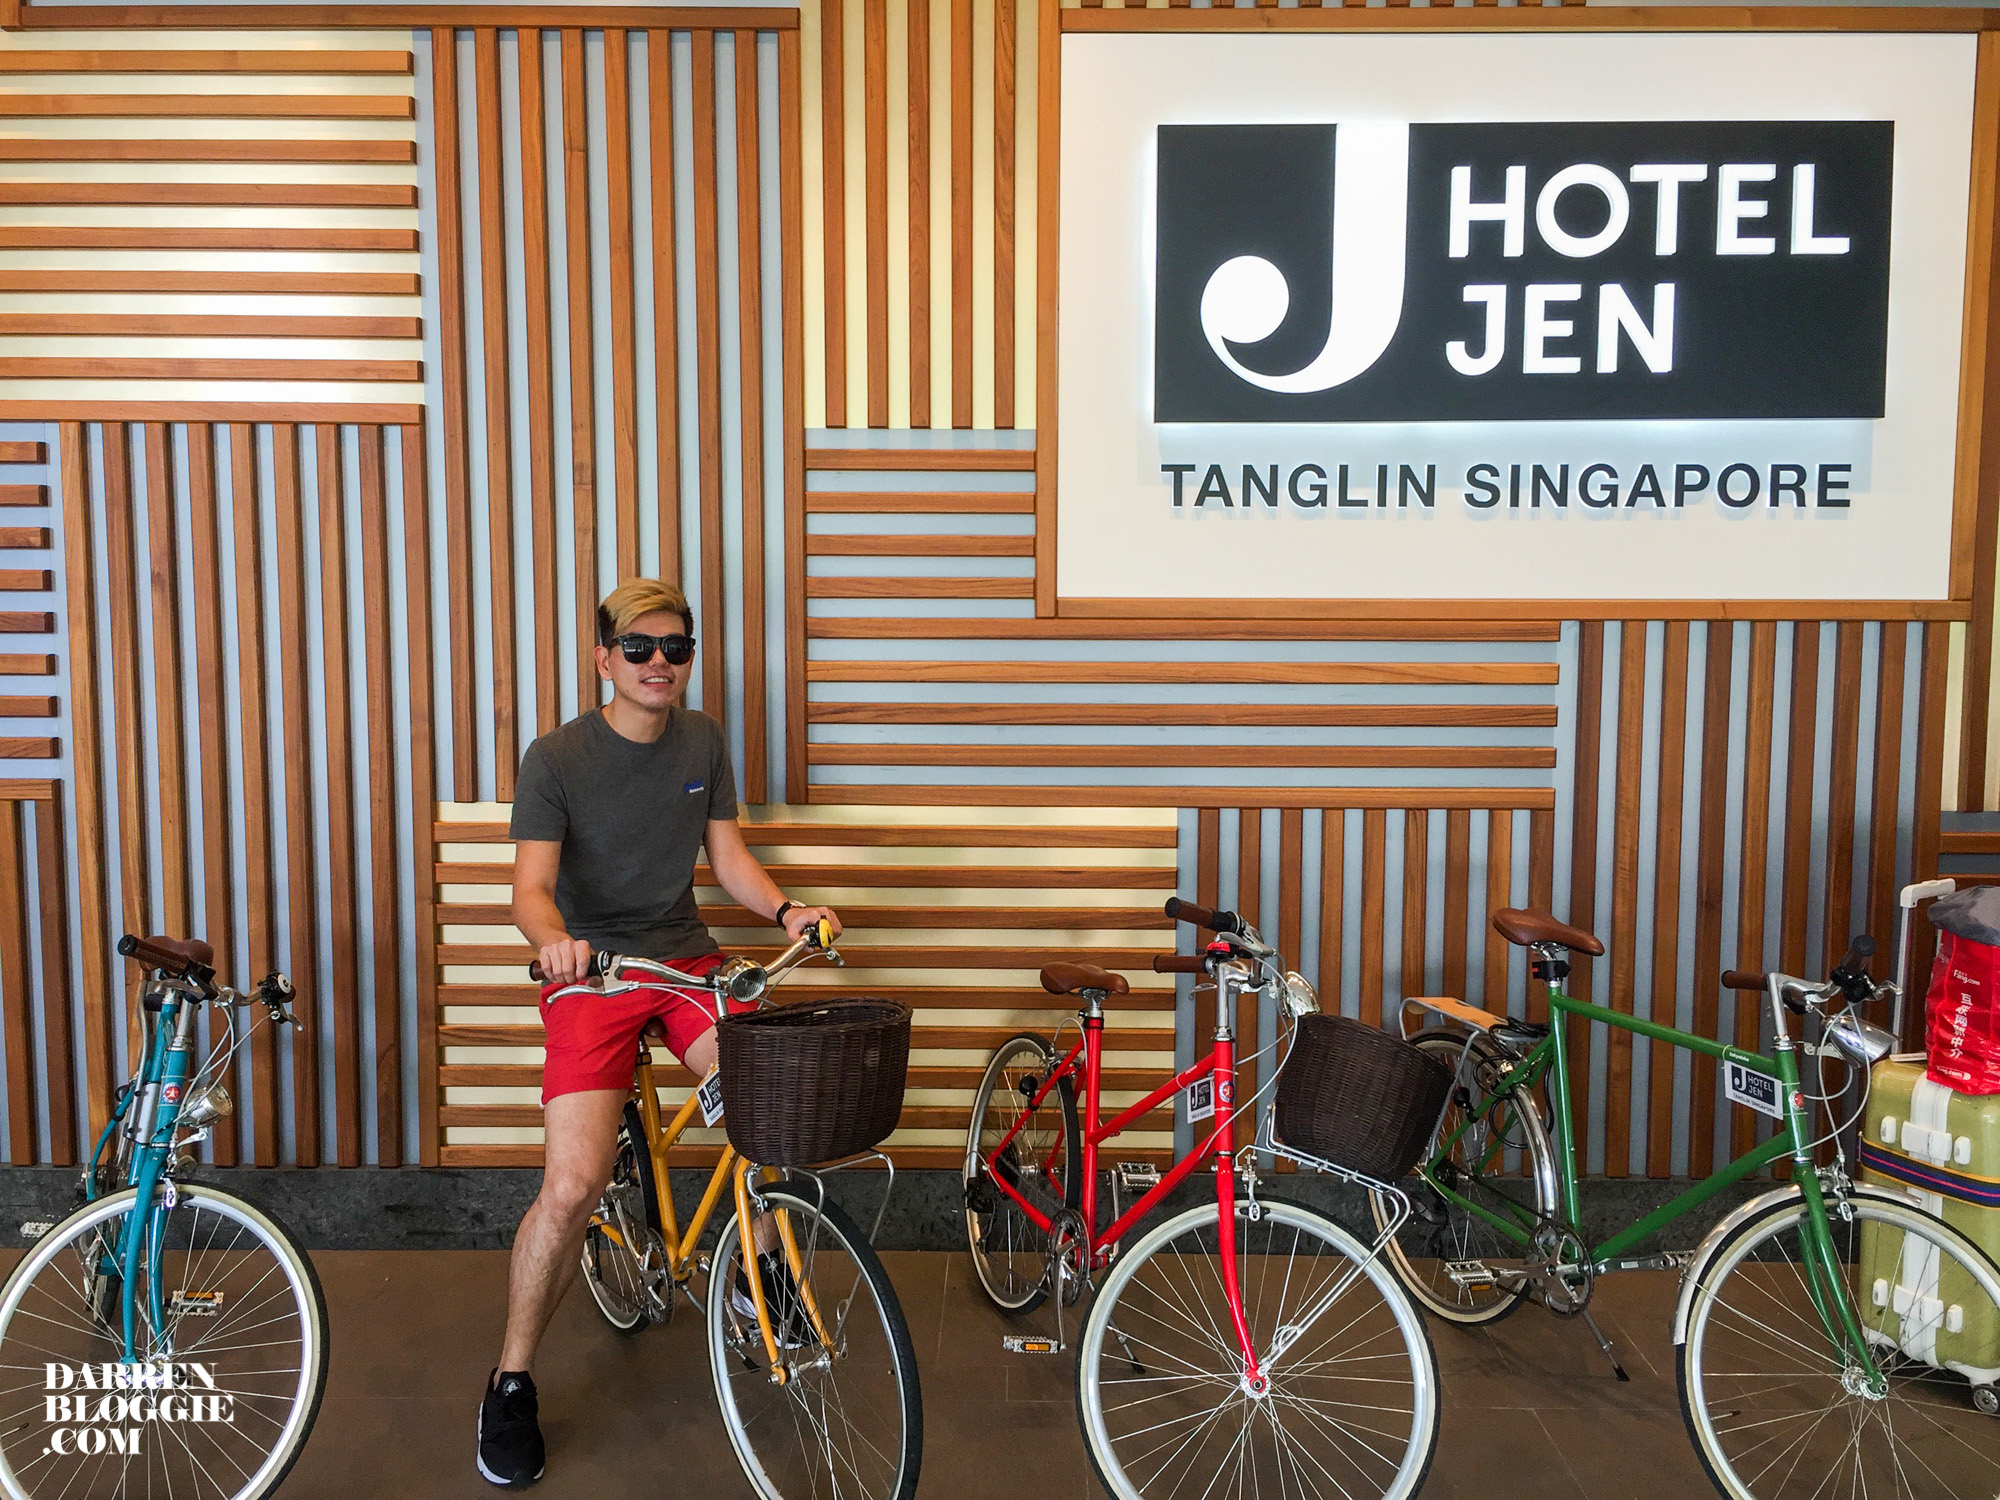 Hotel-jen-tanglin-staycation-3